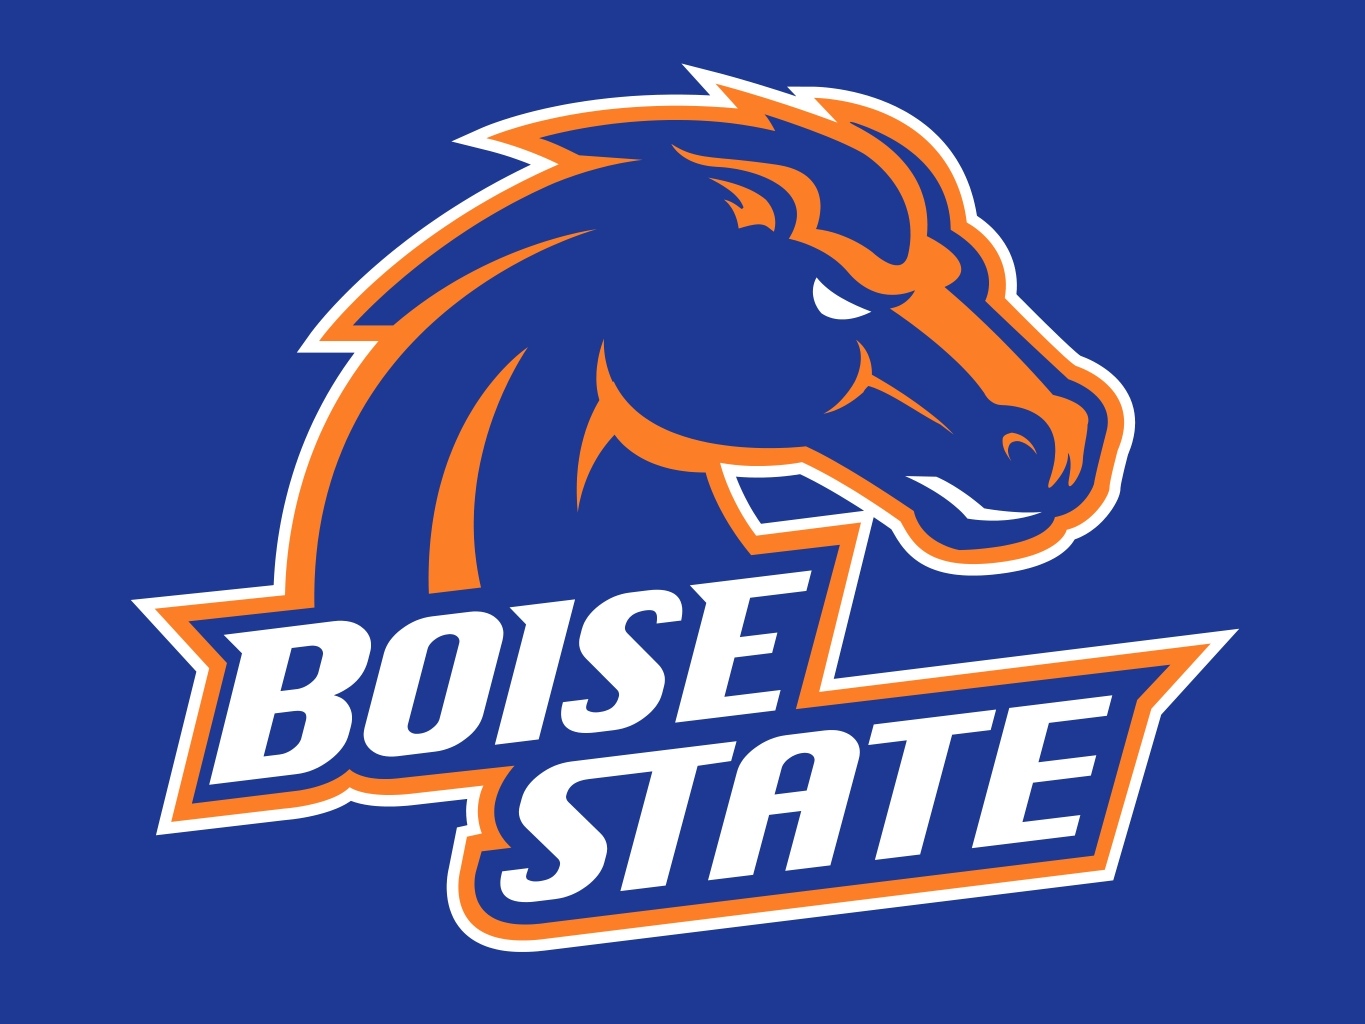 NCAA Boise State Broncos Badge Reel